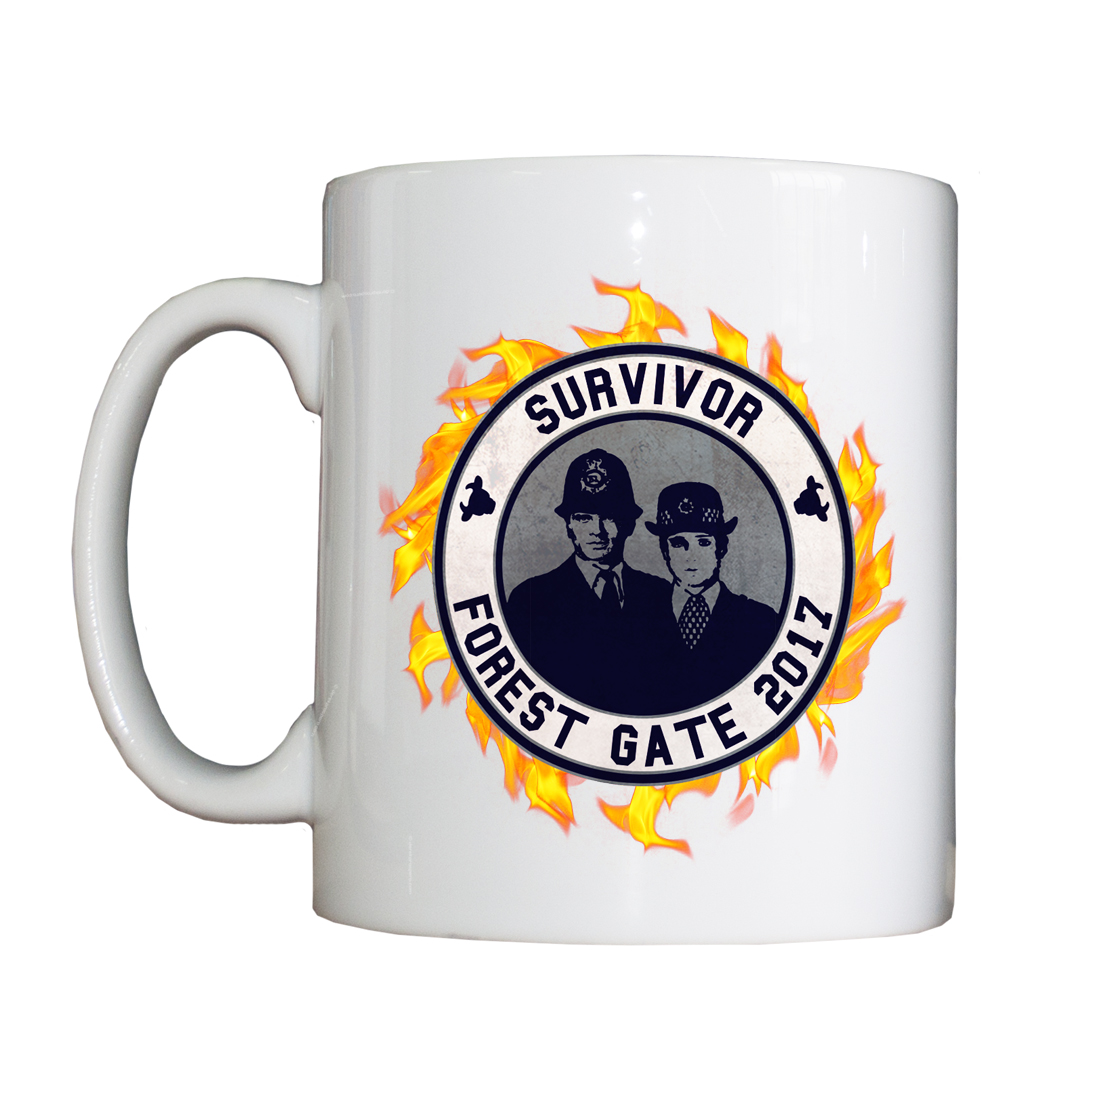 Forest Gate Survivor Mug